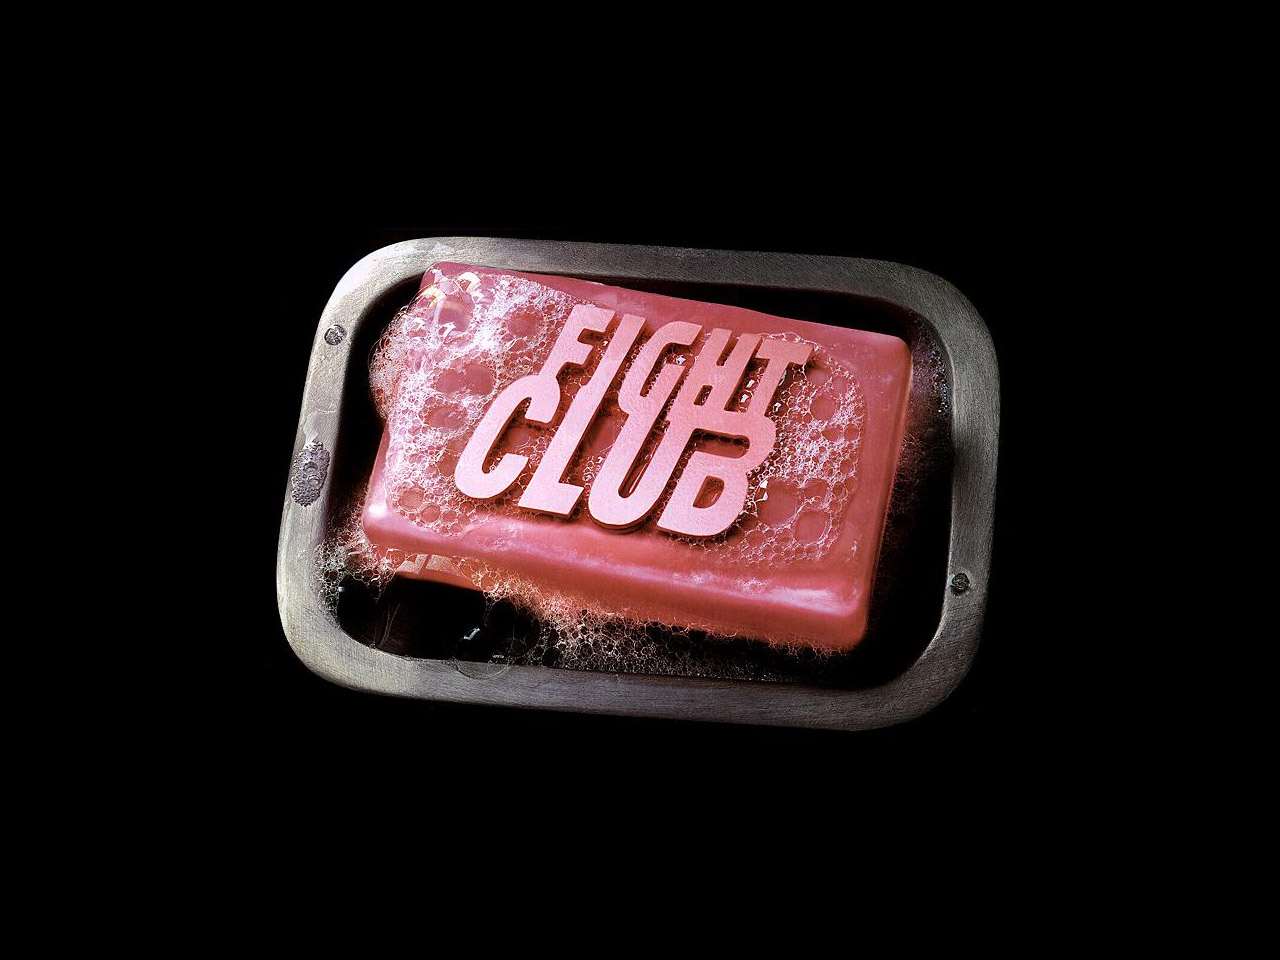 Desktop Background Id Fight Club Soap Wallpaper HD